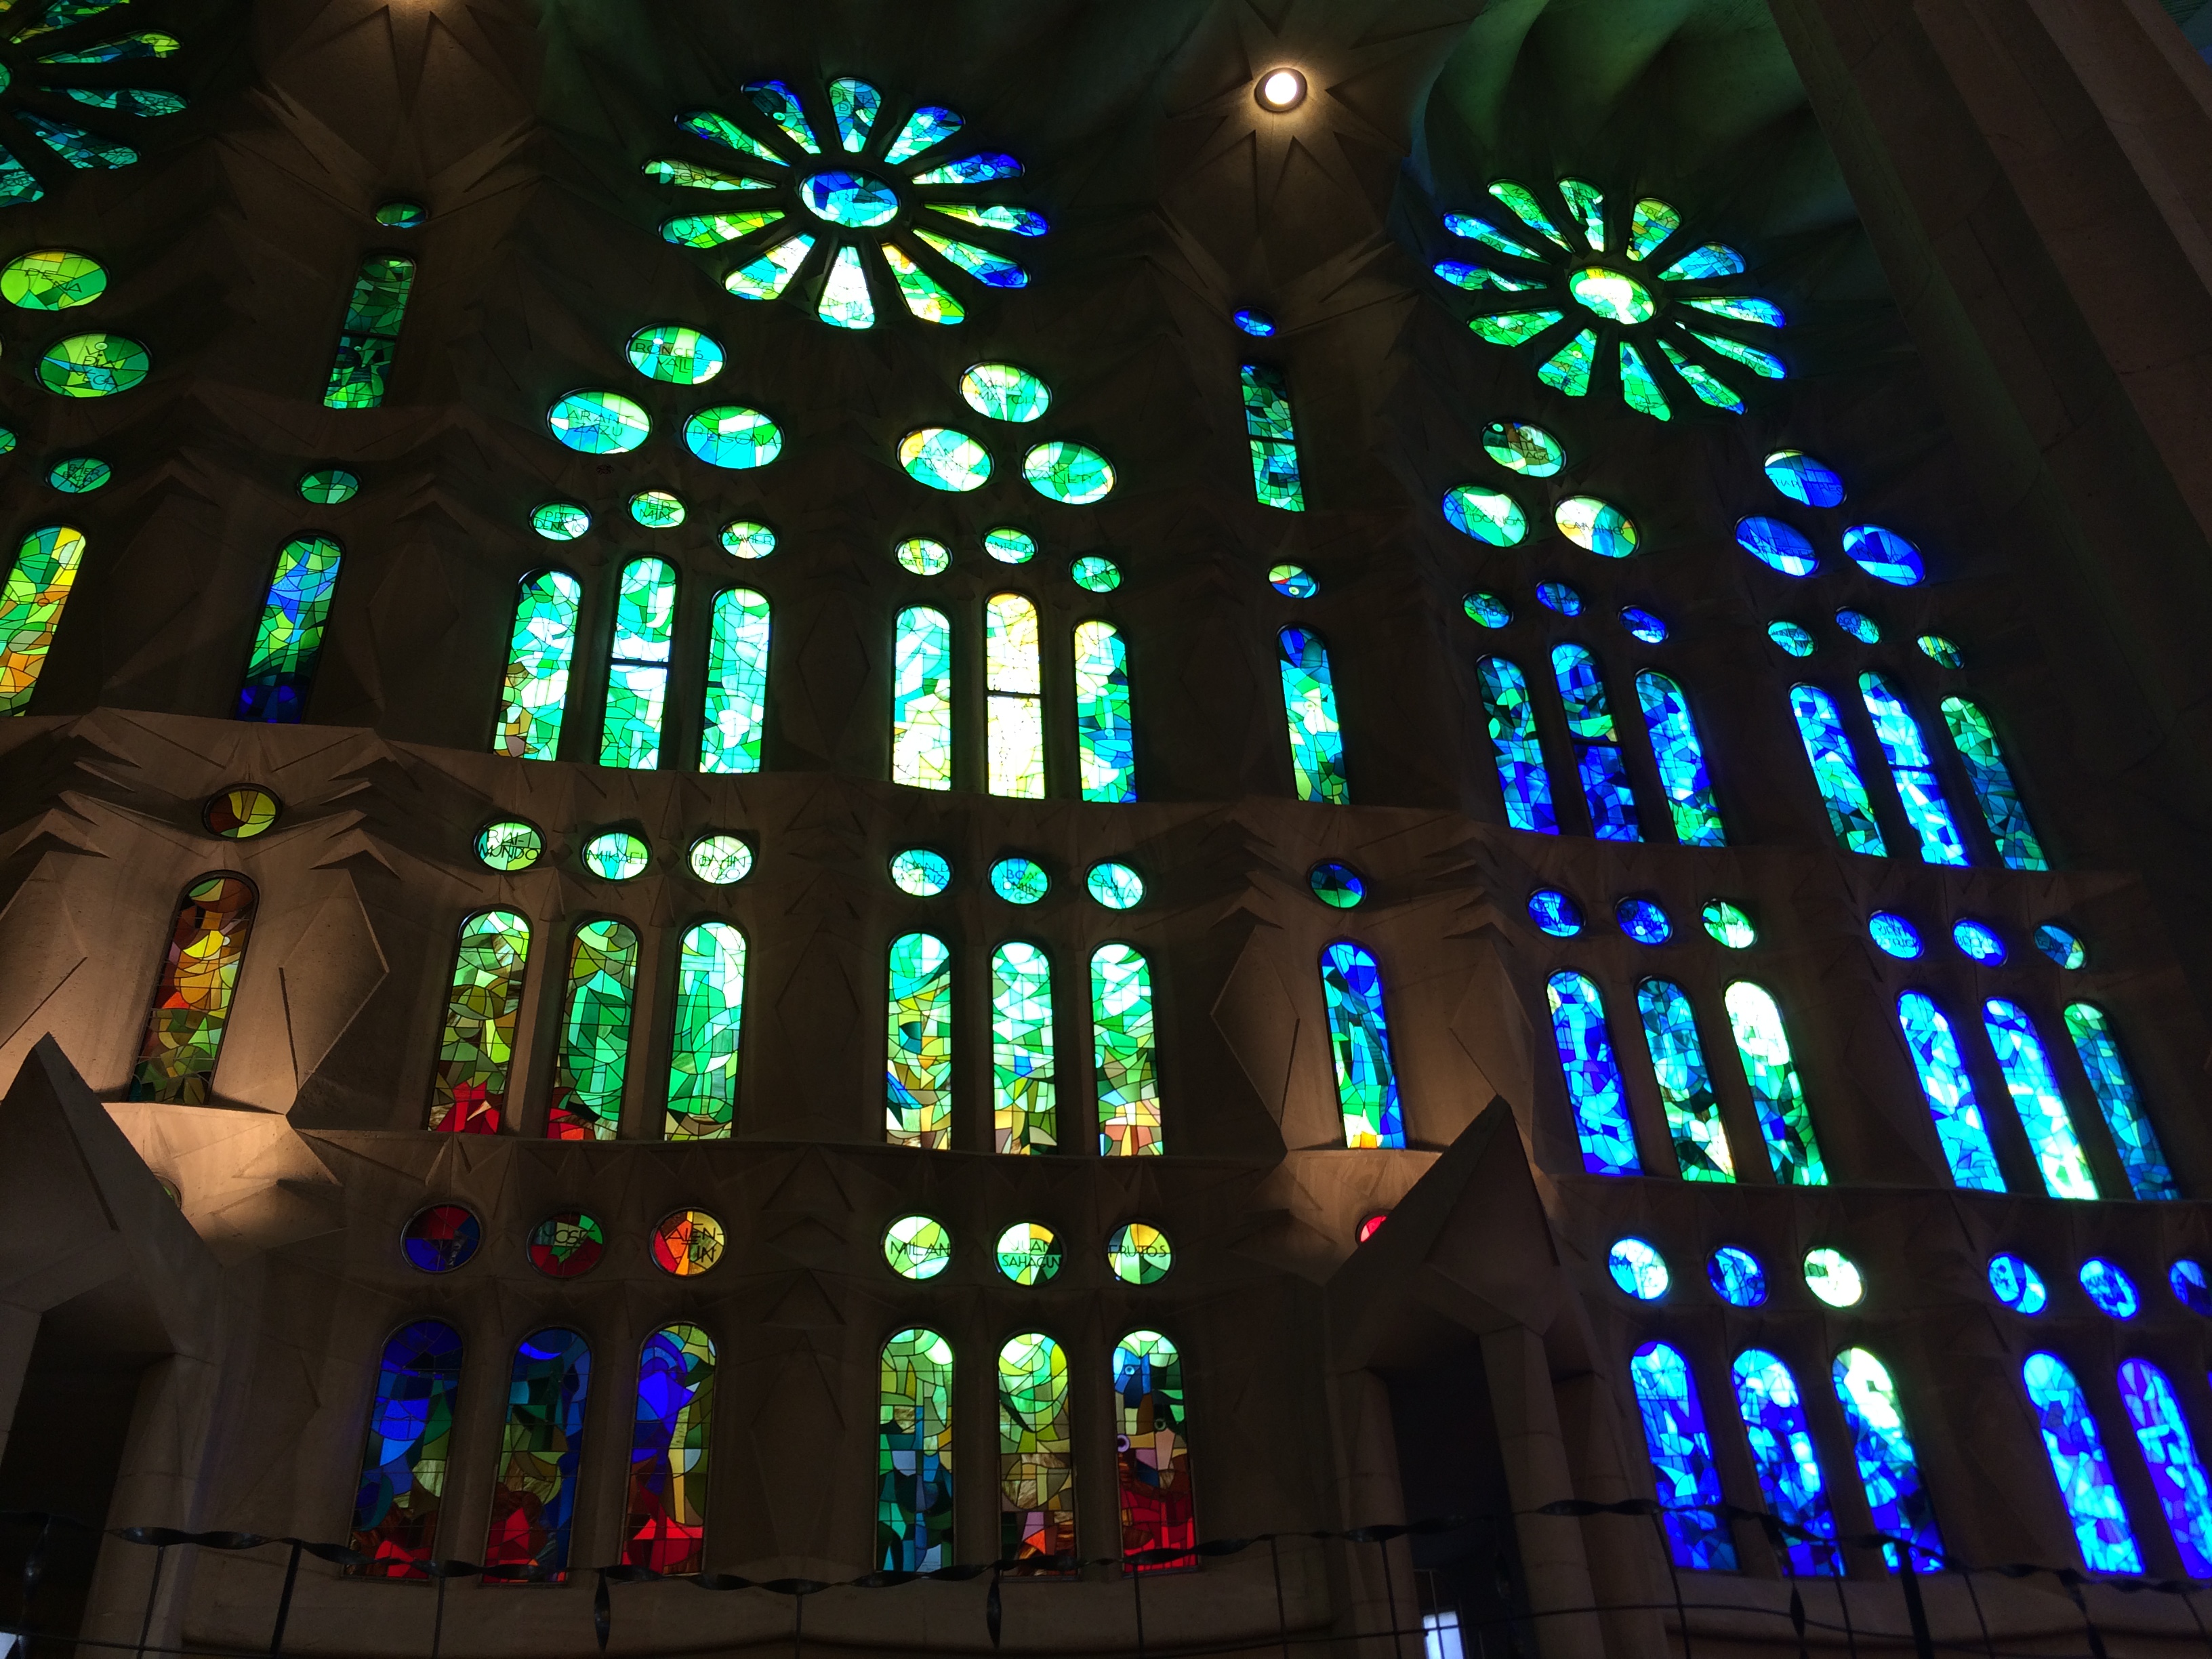 Image inside the Sagrada Familia